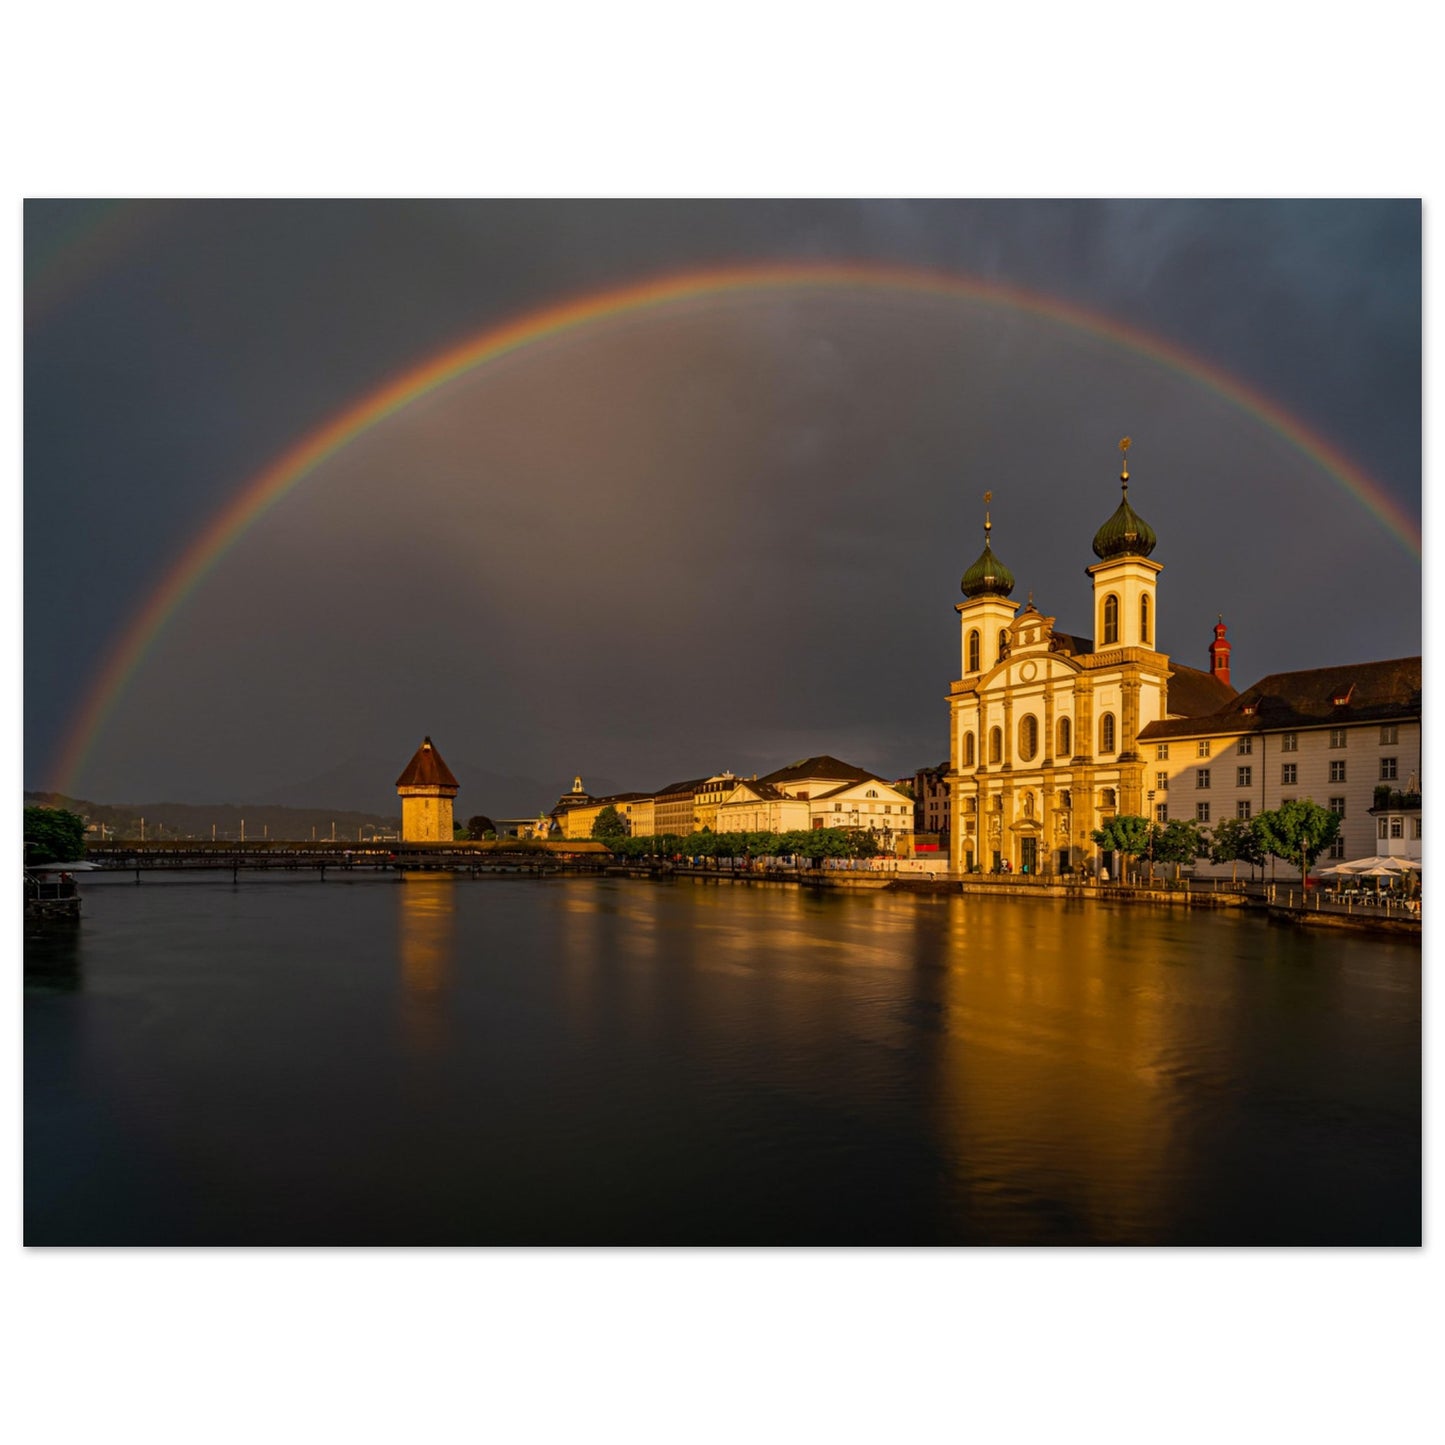 Regenbogen Luzern - Premium Poster